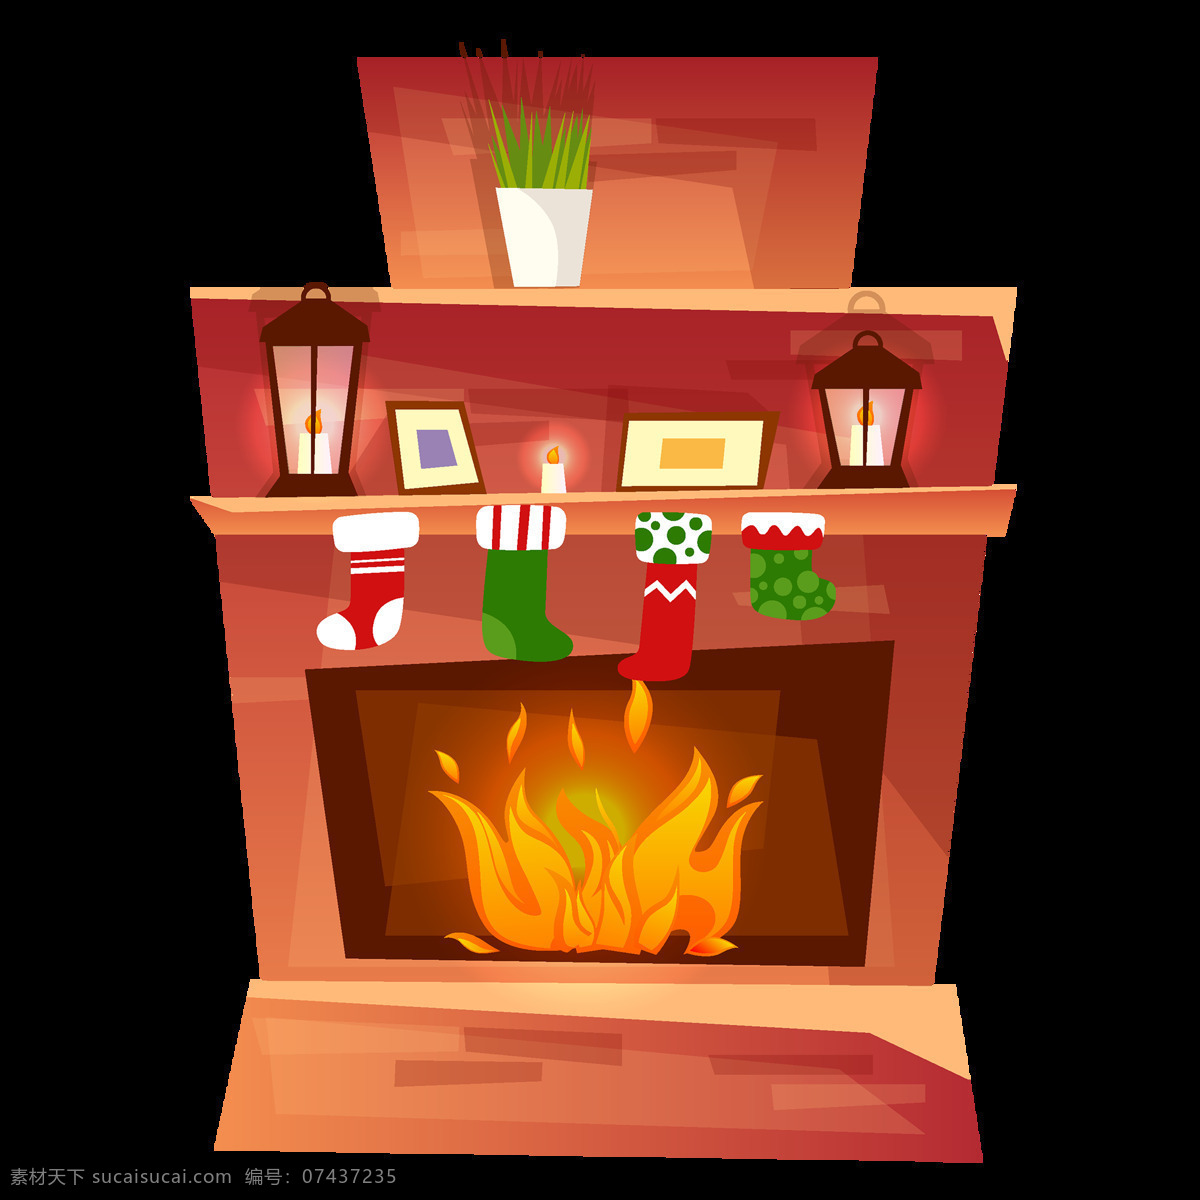 圣诞节 壁炉 原创 元素 卡通 袜子 相框 绿植 手绘 炉火